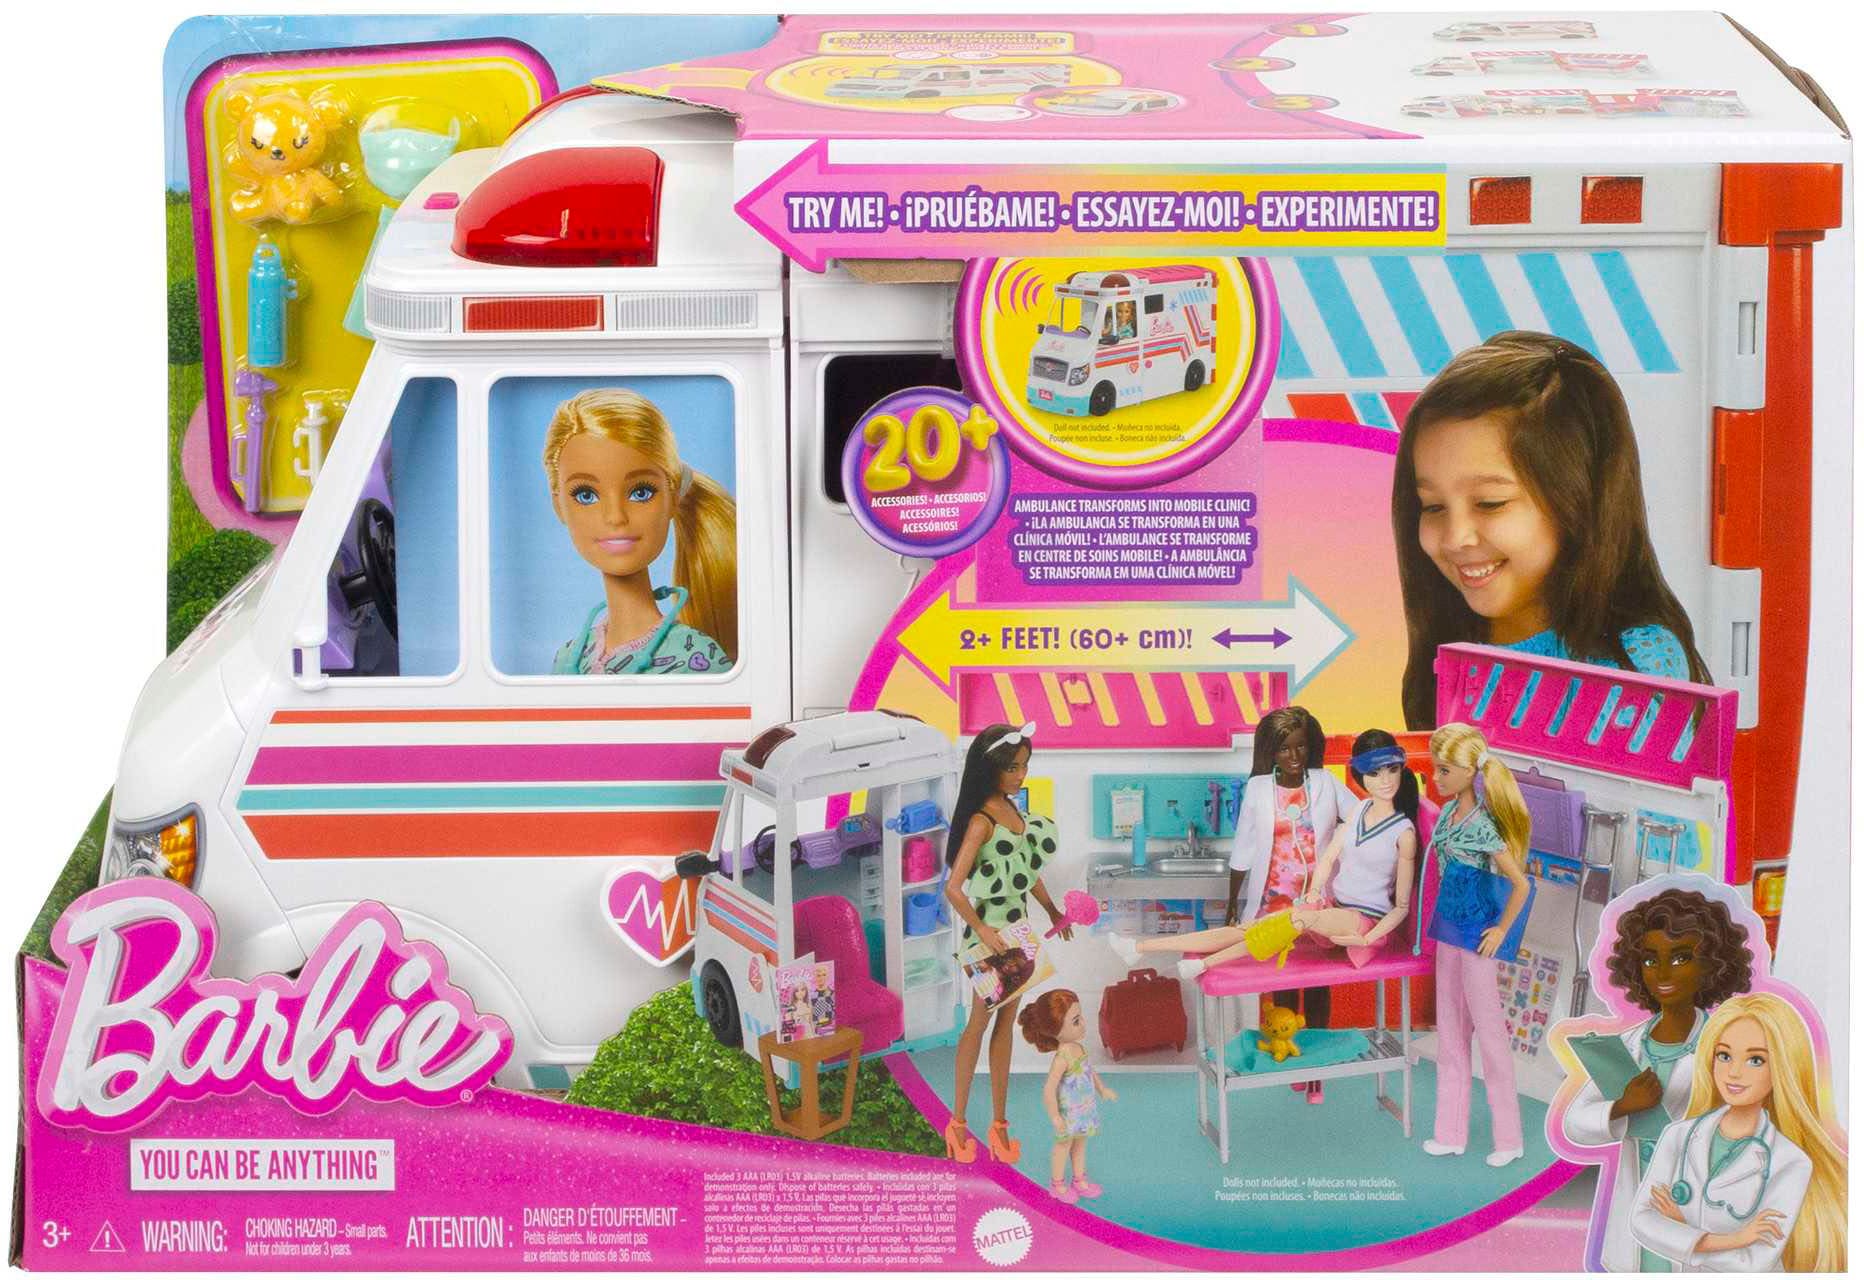 Barbie Puppen Fahrzeug »Krankenwagen 2-in-1 Spielset«, mit Licht und Geräuschen